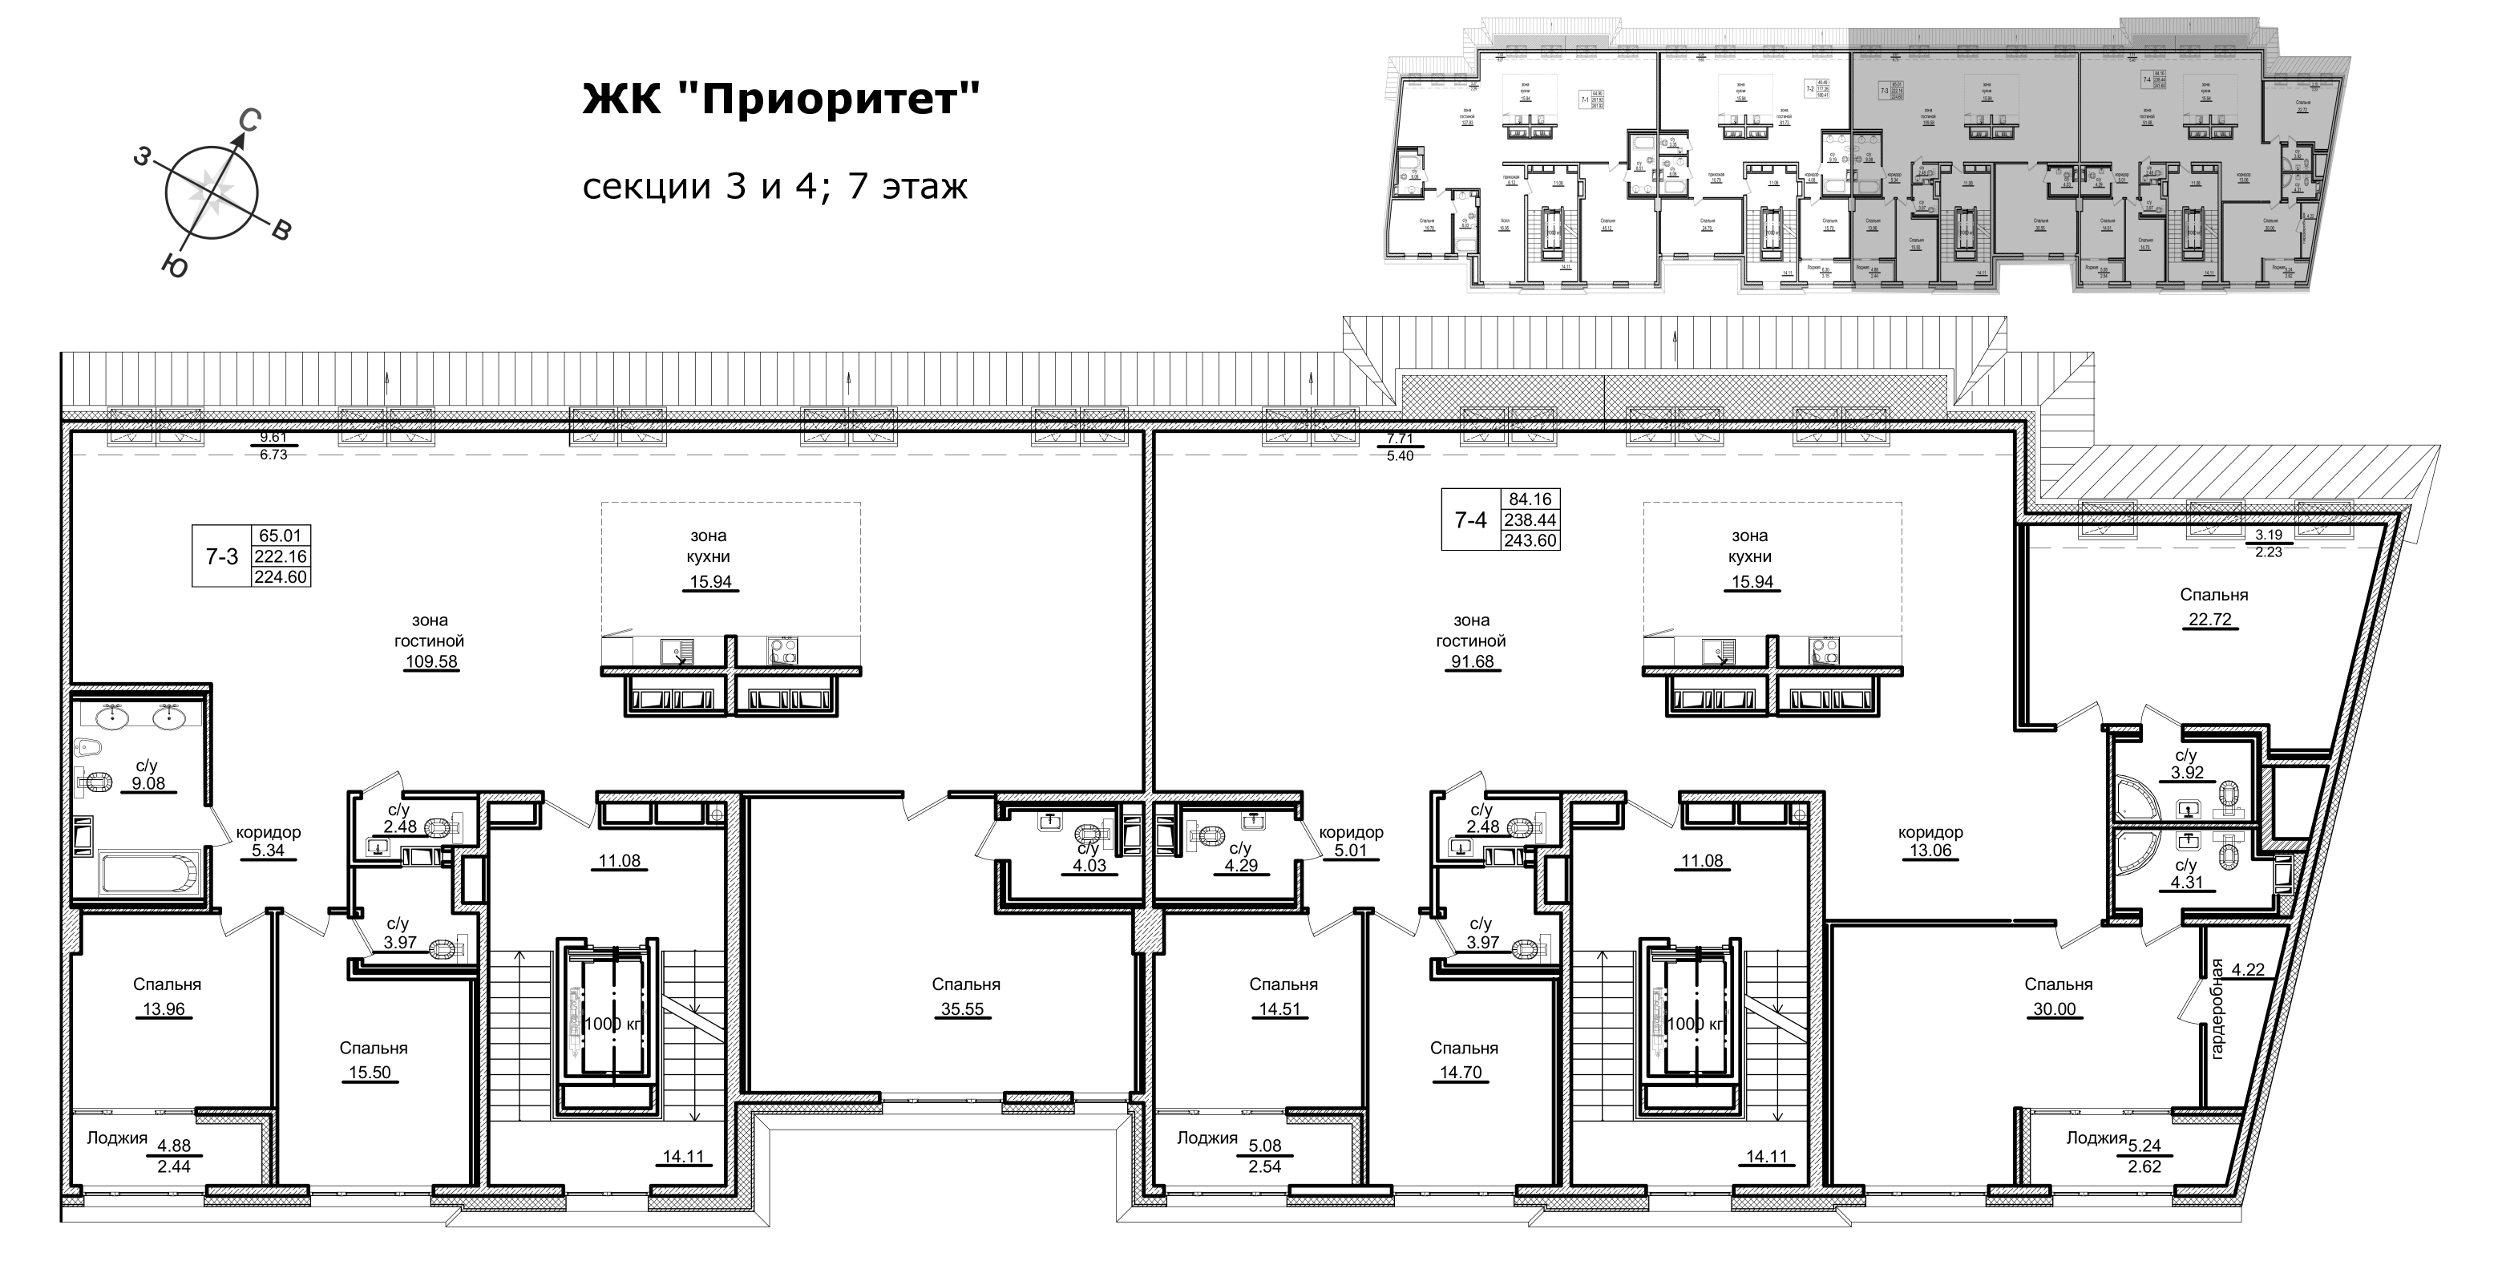 3-комнатная (Евро) квартира, 240.7 м² в ЖК "Приоритет" - планировка этажа